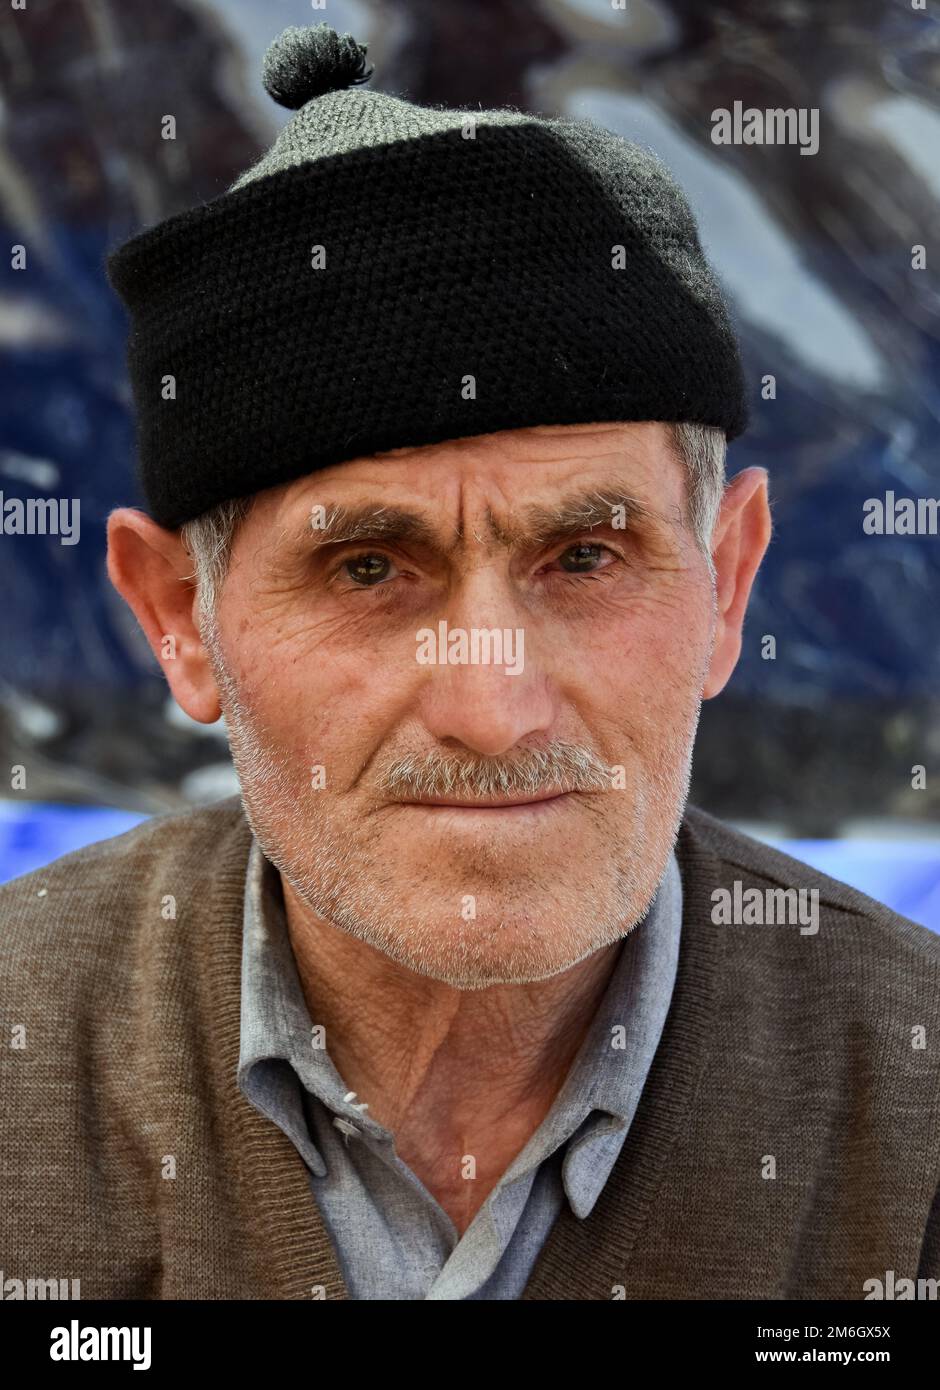 Caras de Turquía: Adultos masculinos maduros Foto de stock